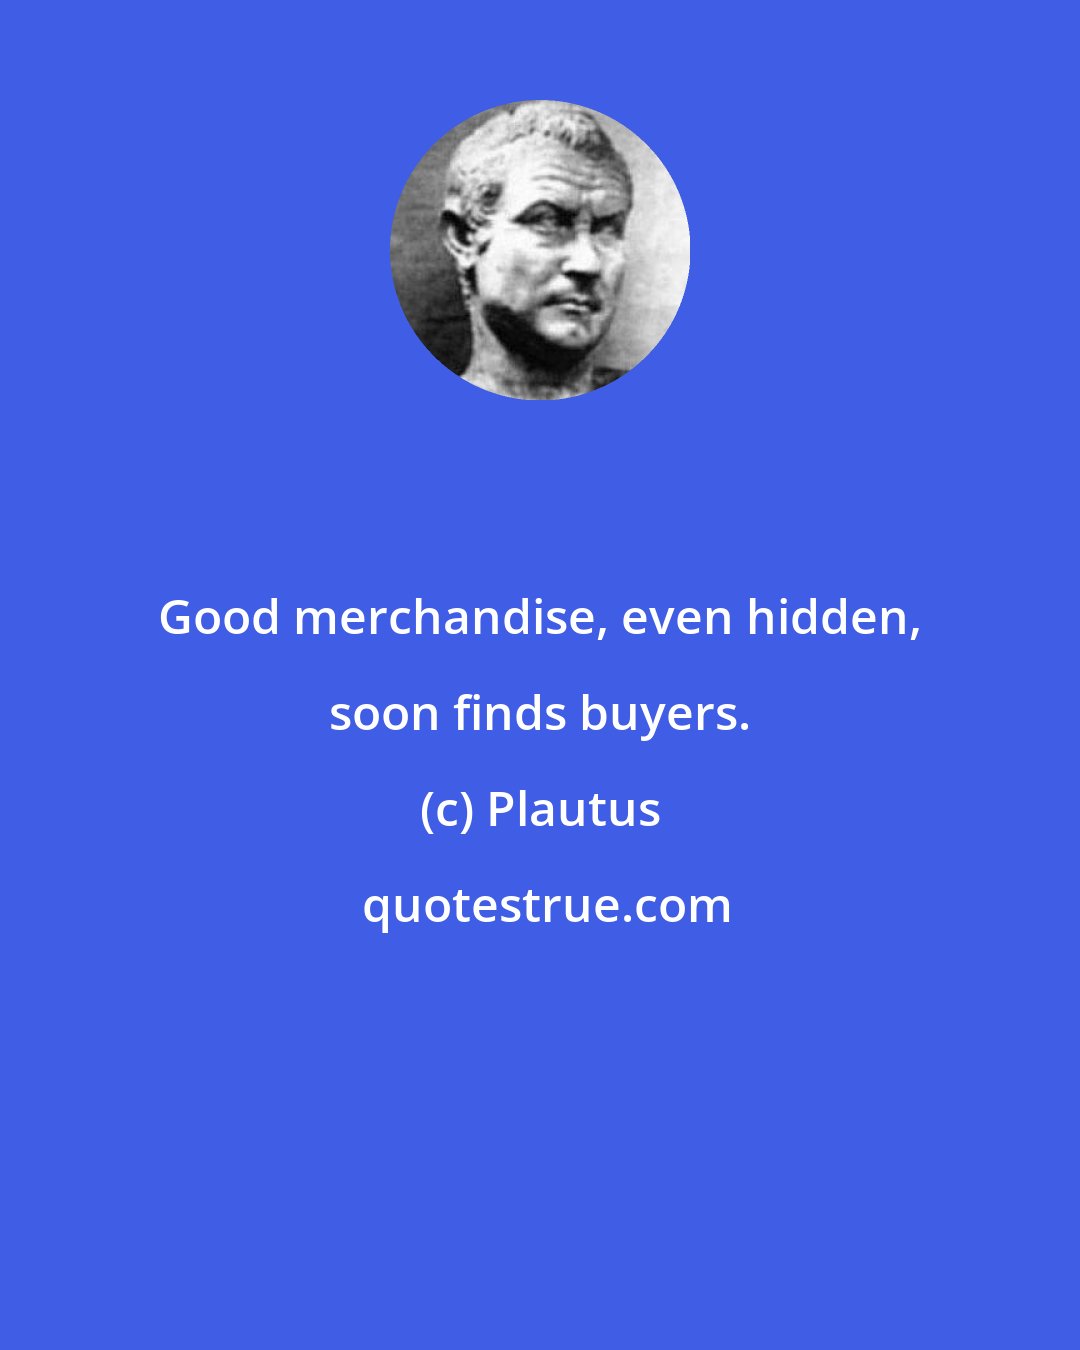 Plautus: Good merchandise, even hidden, soon finds buyers.